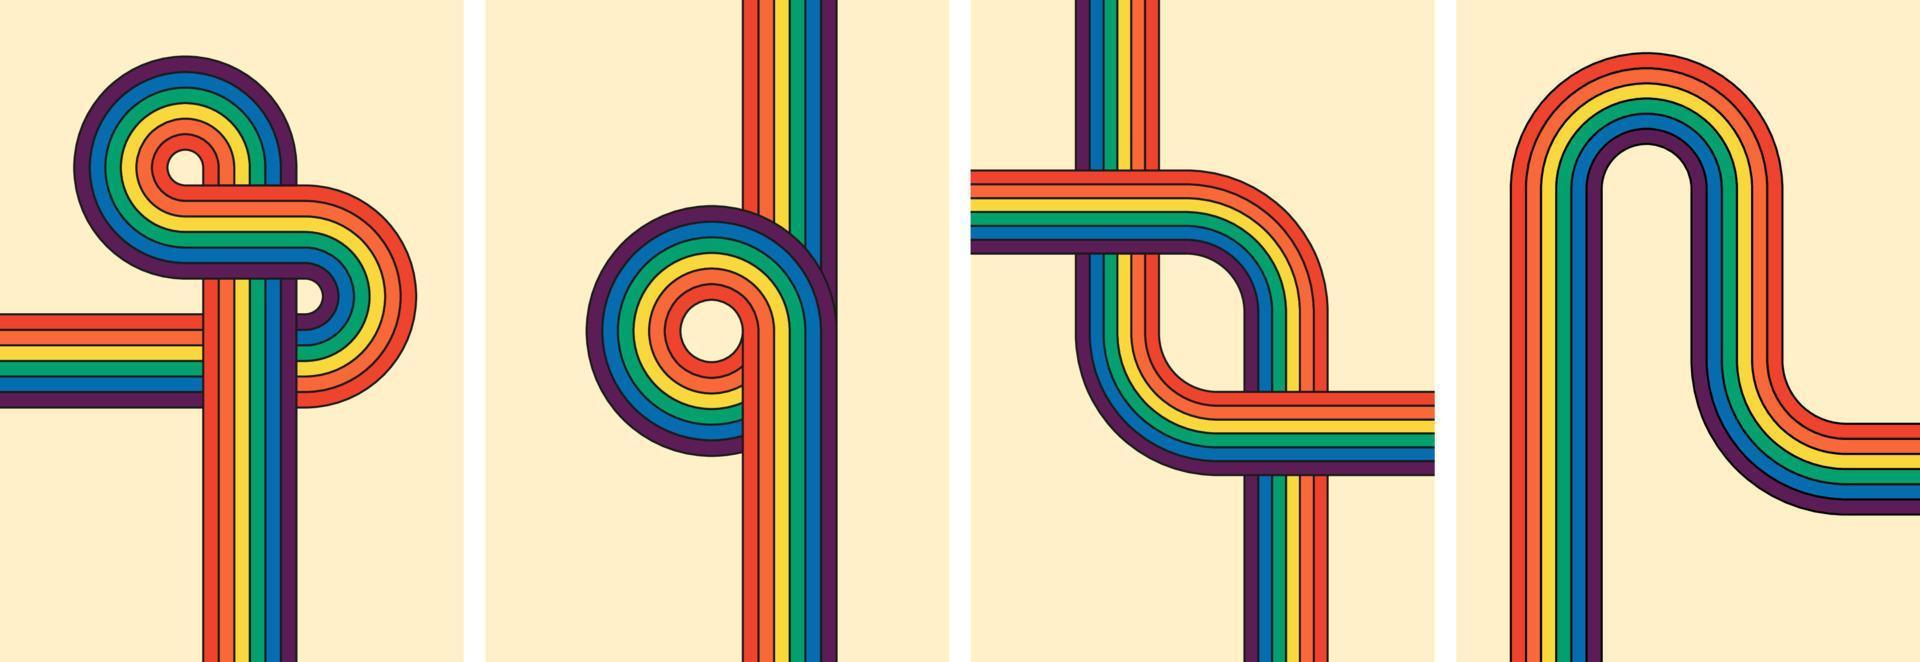 de moda minimalista y2k carteles presentando vistoso obra de arte retro maravilloso color arcoiris a rayas carteles geométrico hippie arcoiris caminos varios resumen iridiscente rayas elegante y contemporáneo vector